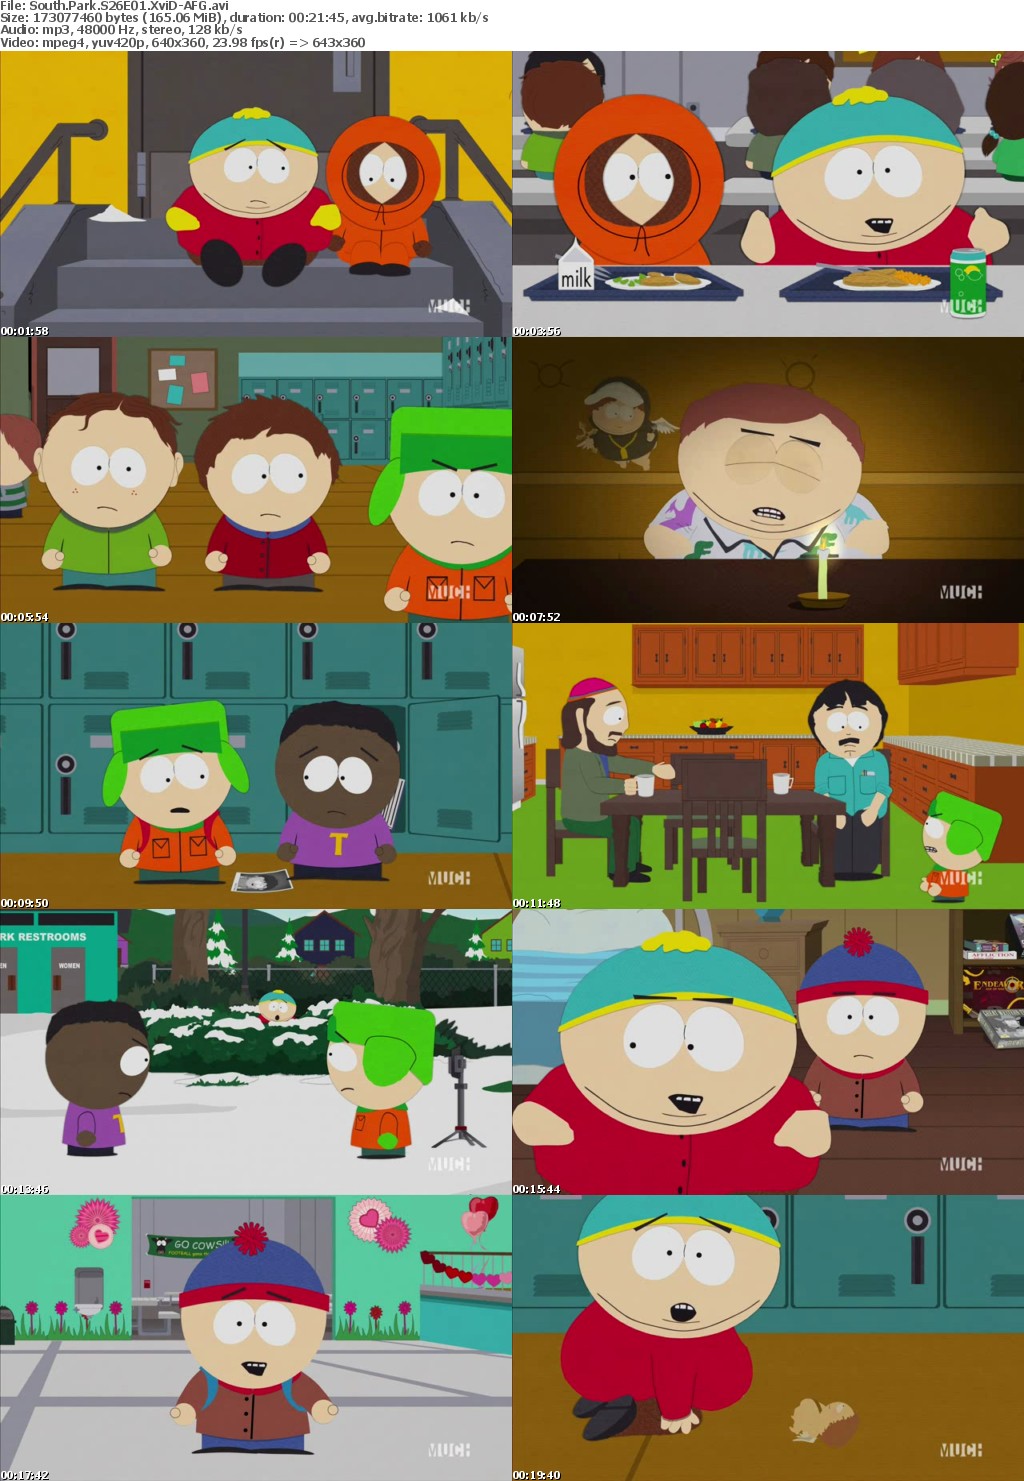 South Park S26E01 XviD-AFG